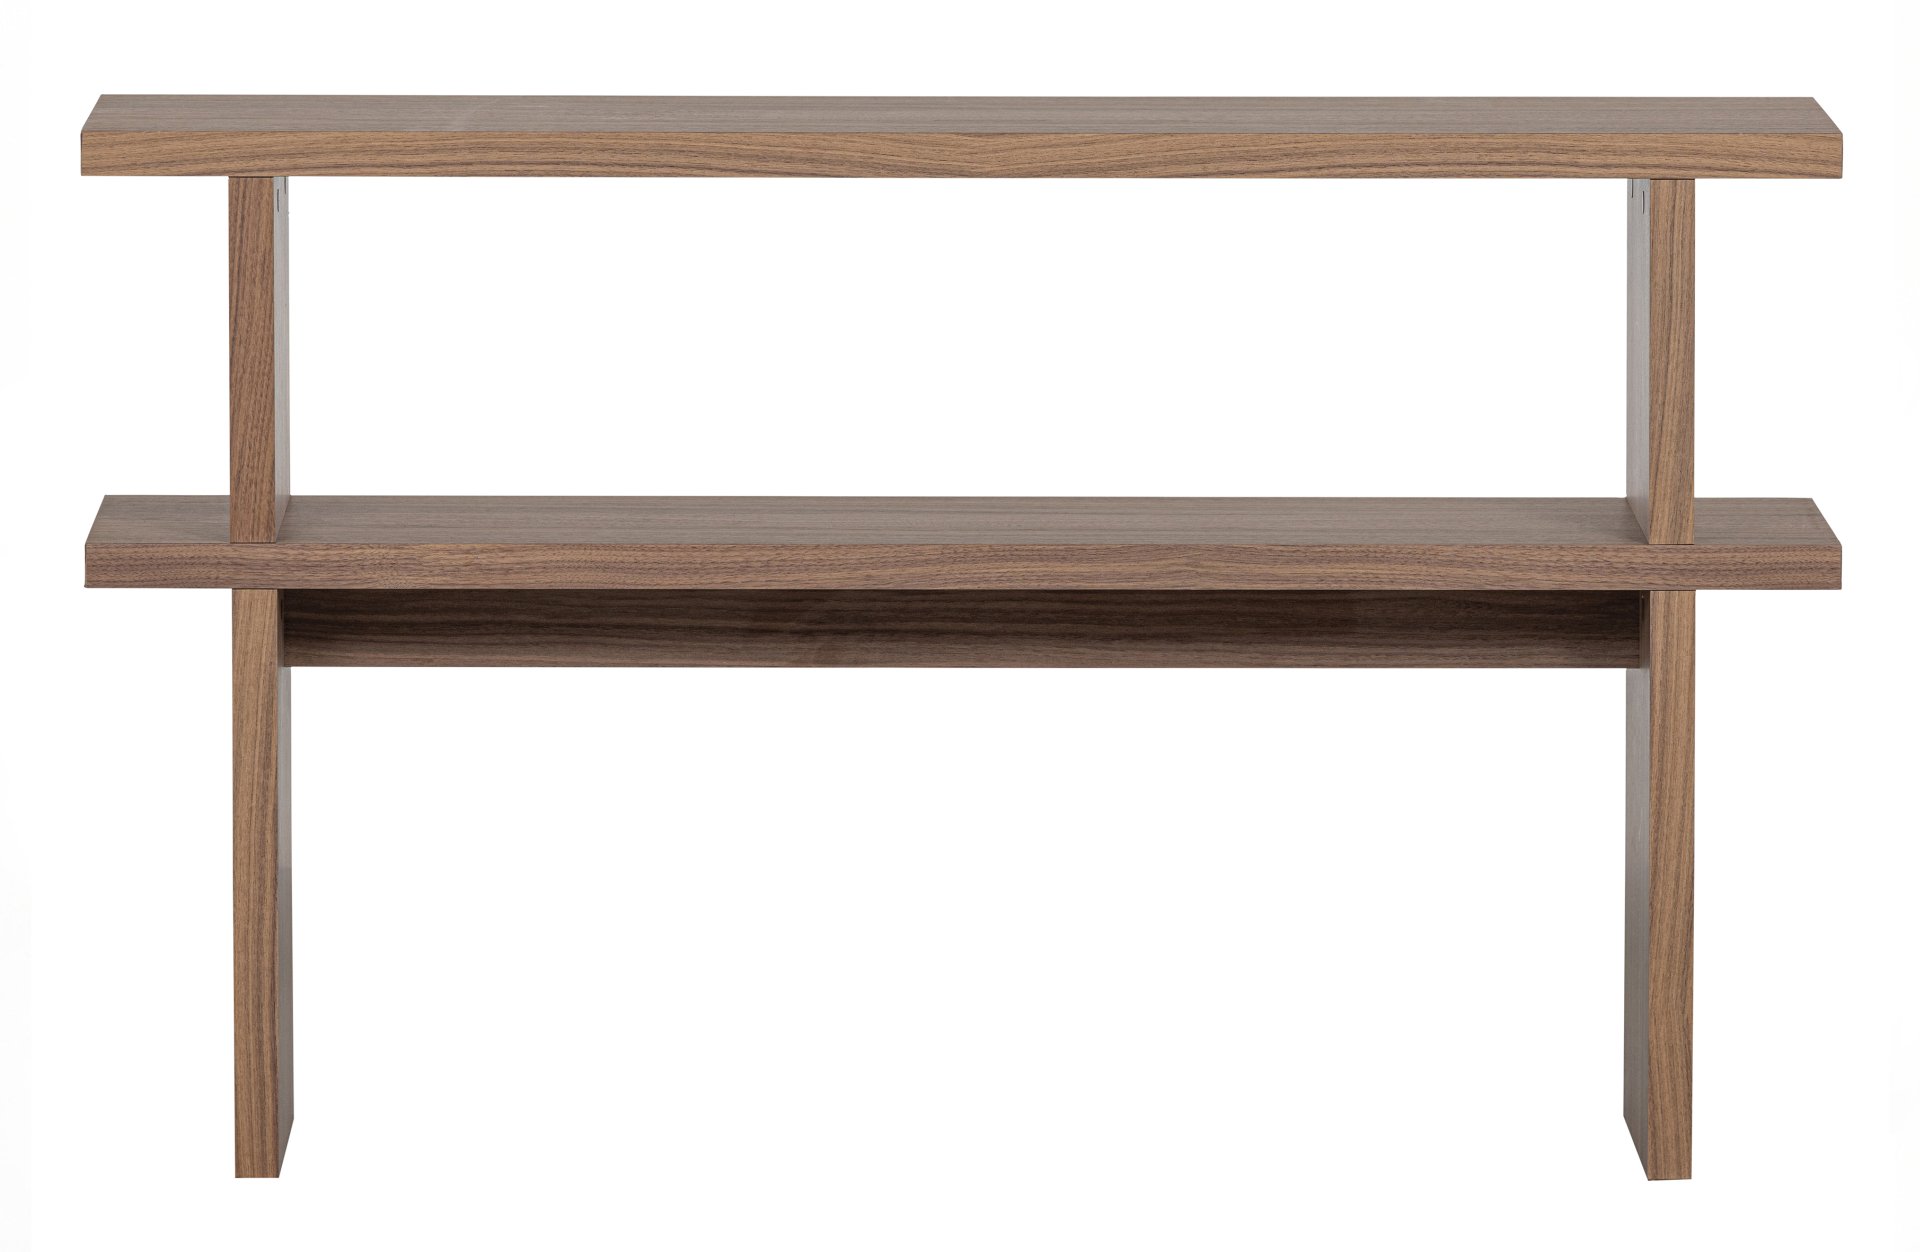 Der Beistelltisch Seitentisch überzeugt mit seinem klassischen Design. Gefertigt wurde er aus Walnussfurnier, welches einen braunen Farbton besitzt. Der Beistelltisch besitzt einen Breite von 120 cm.